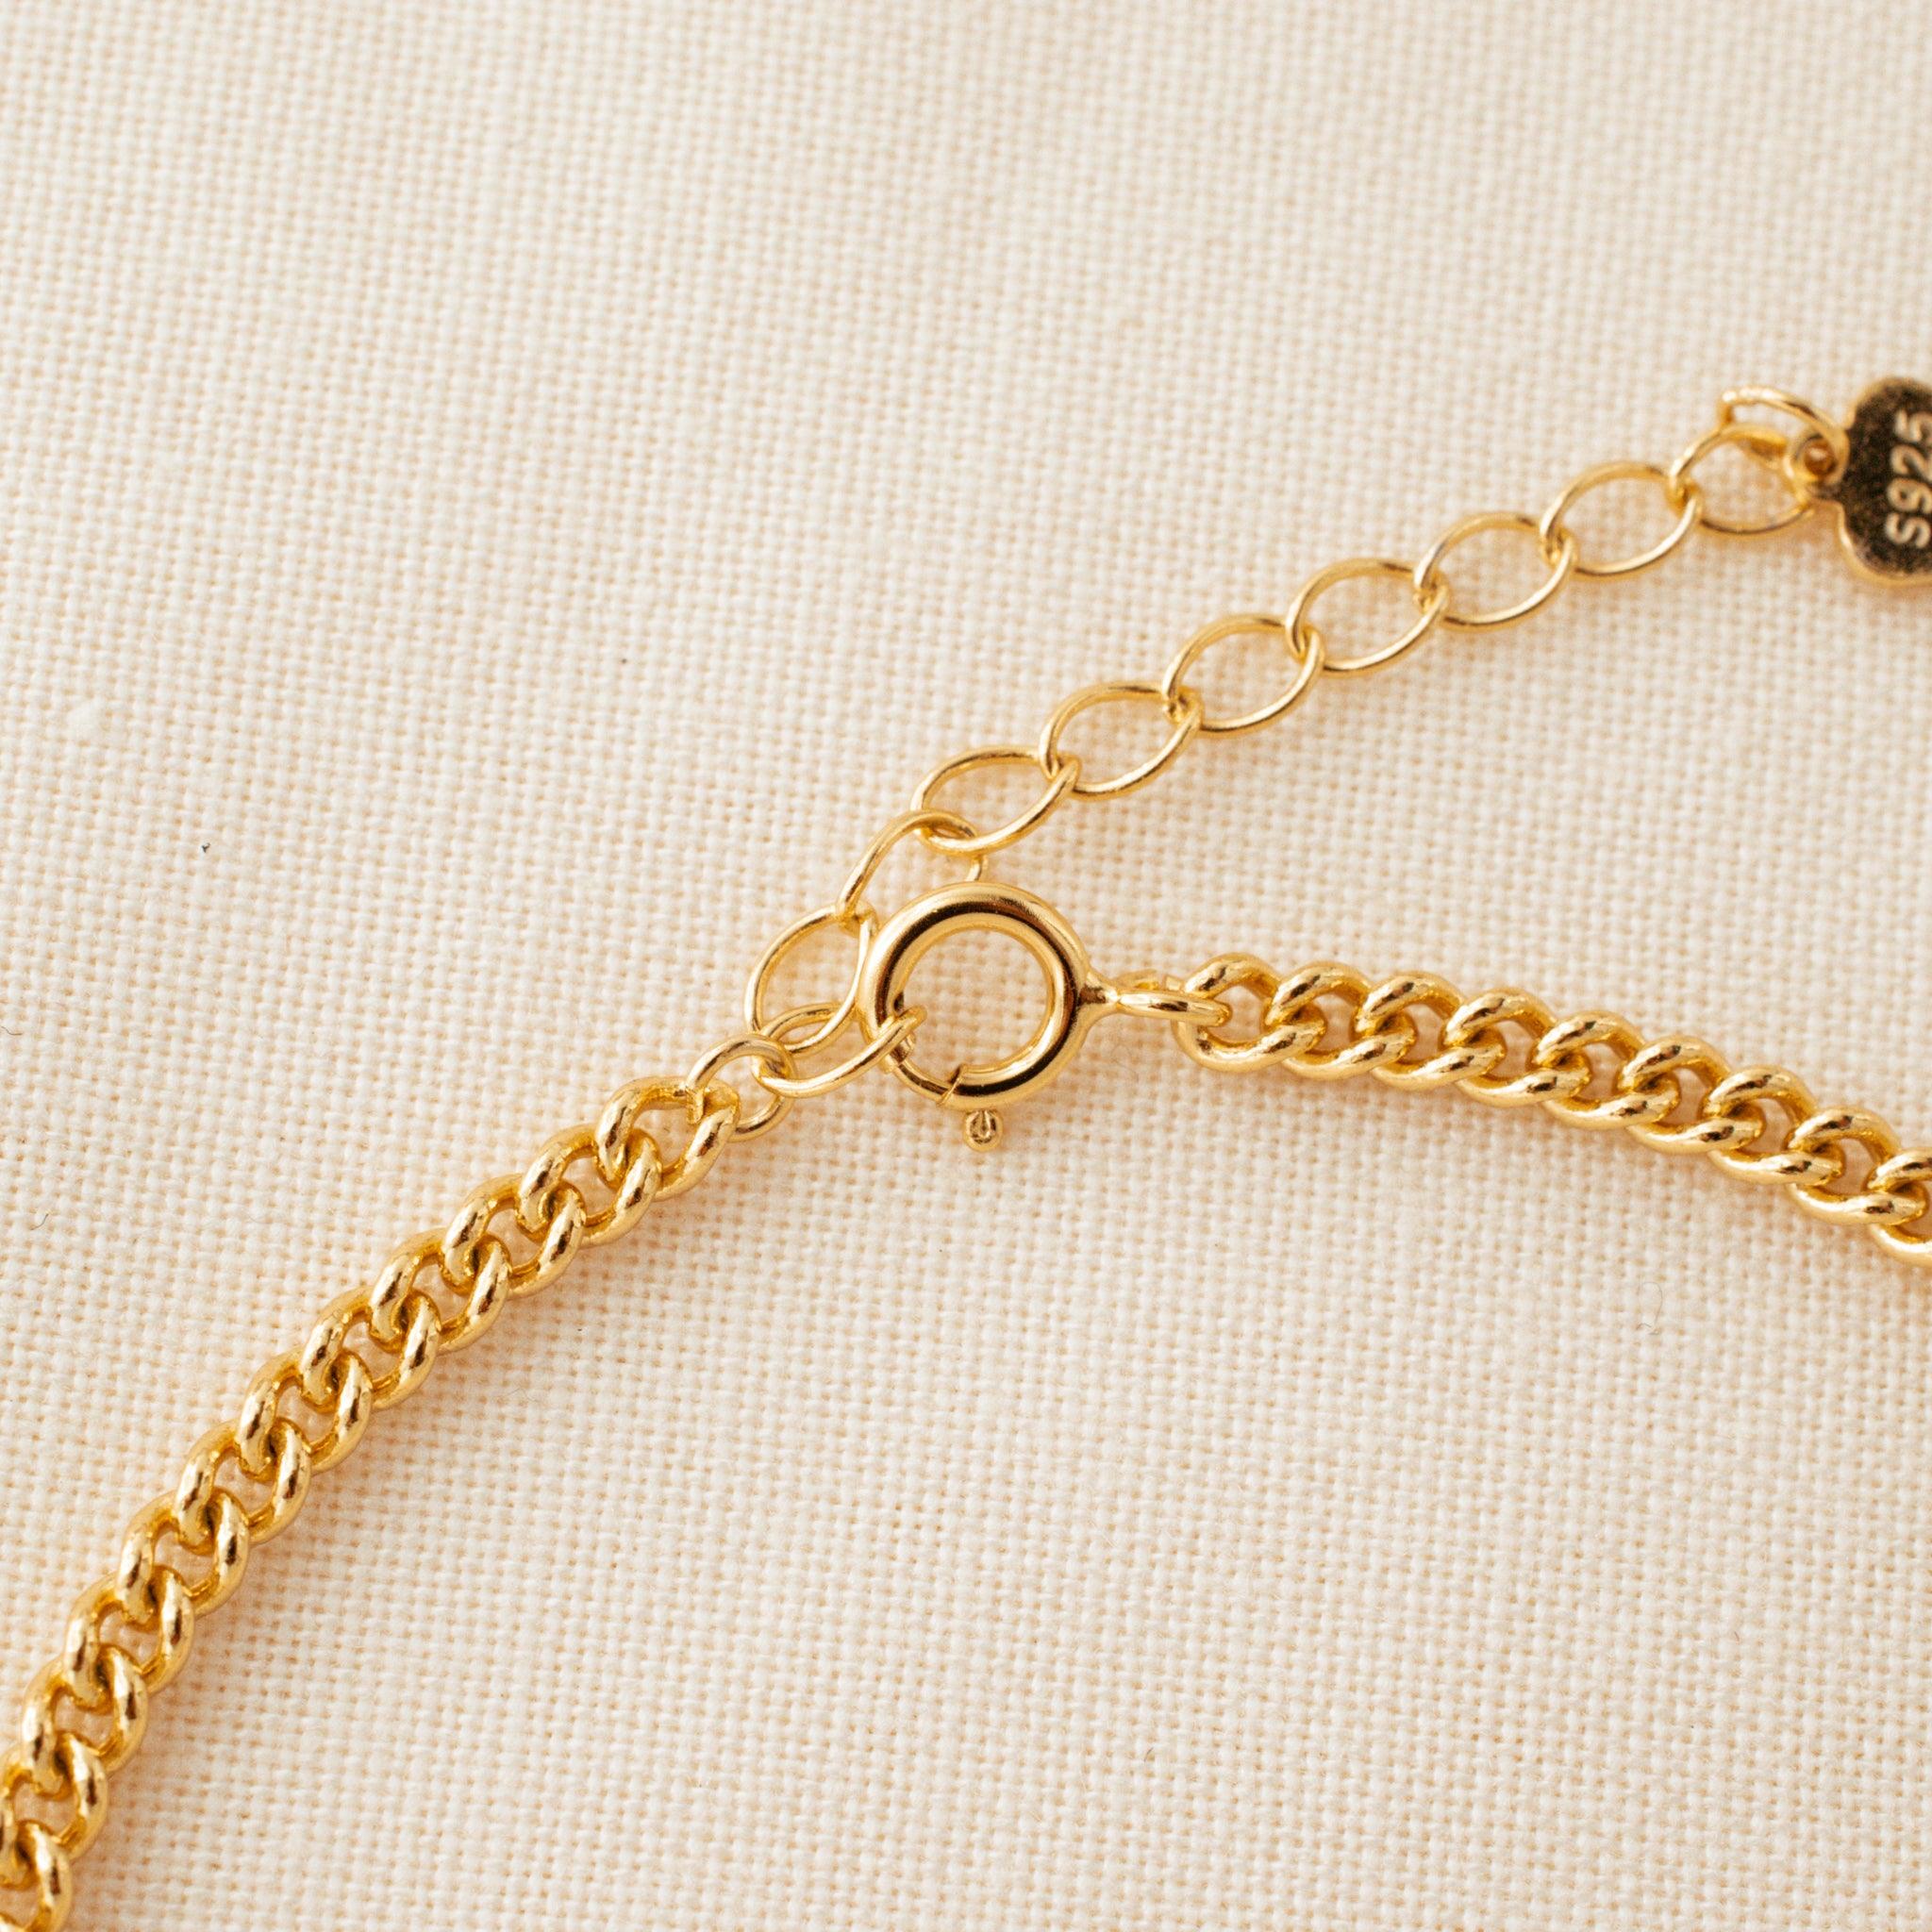 Pink Crystal Gold Chain Bracelet - avantejewel.com